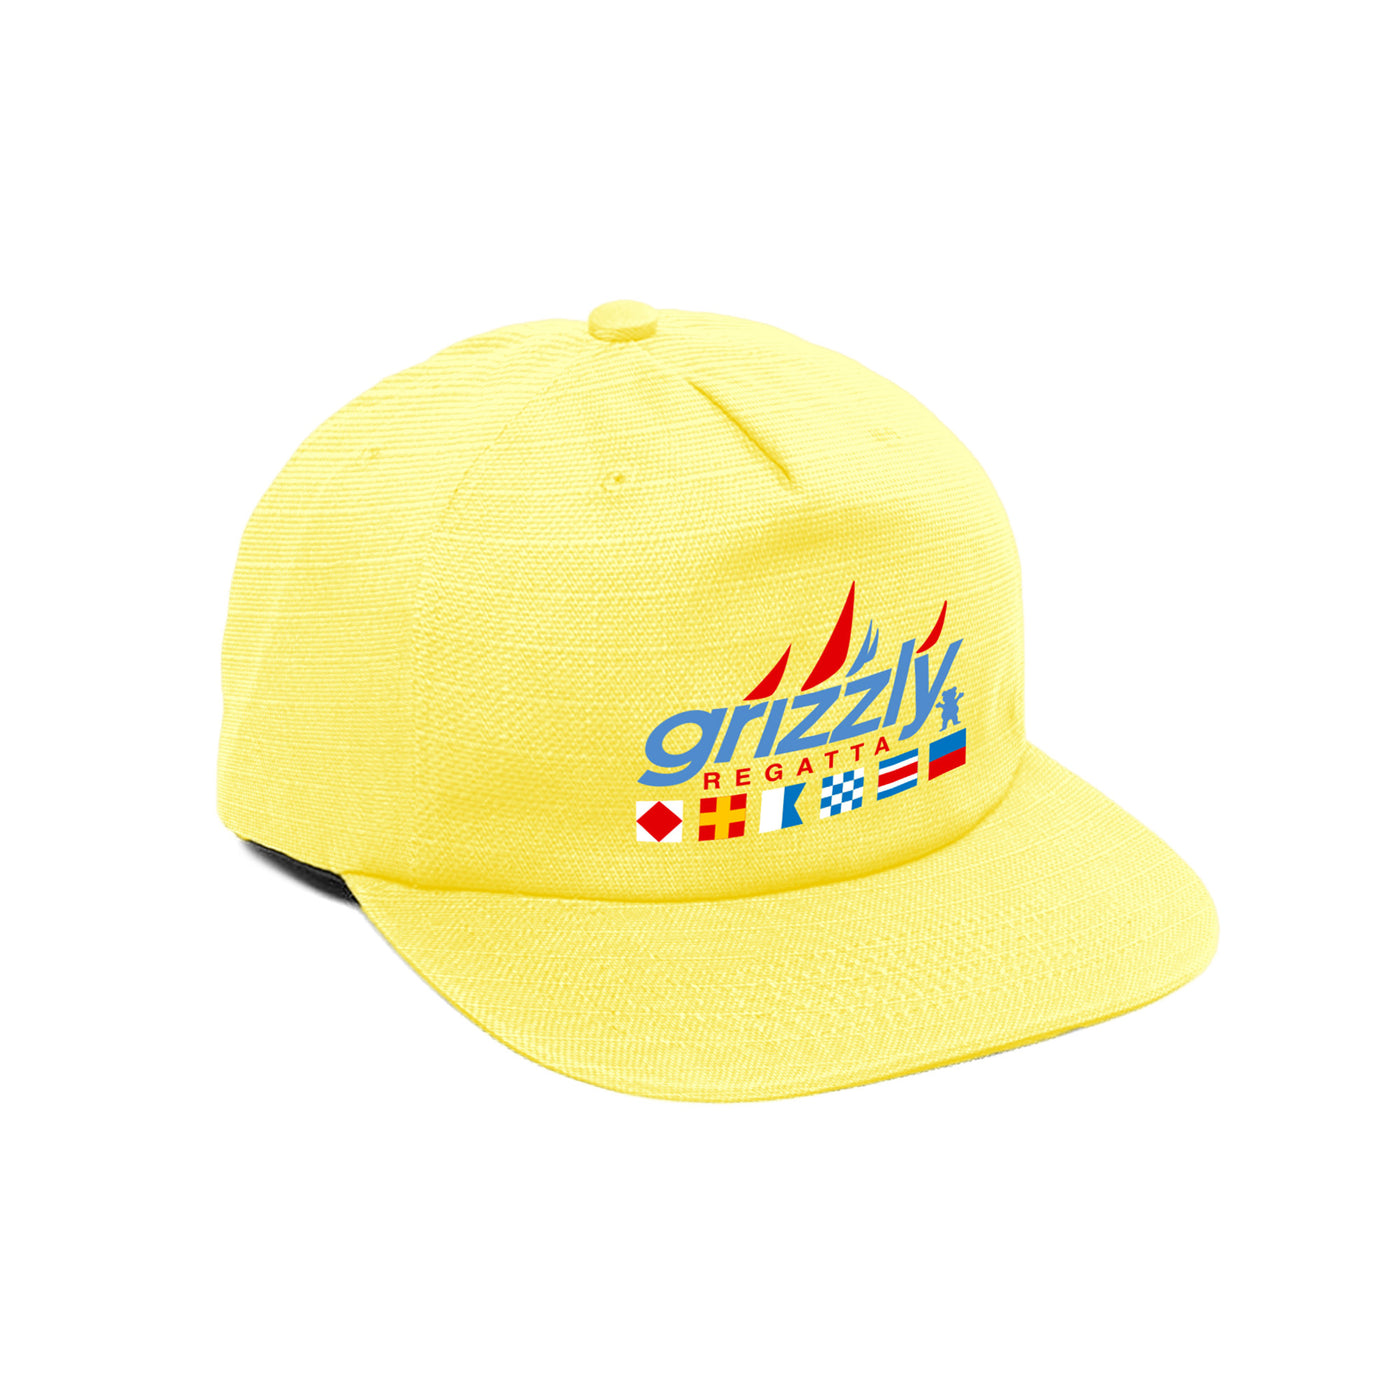 Regatta Unstructured Strapback Hat - Yellow